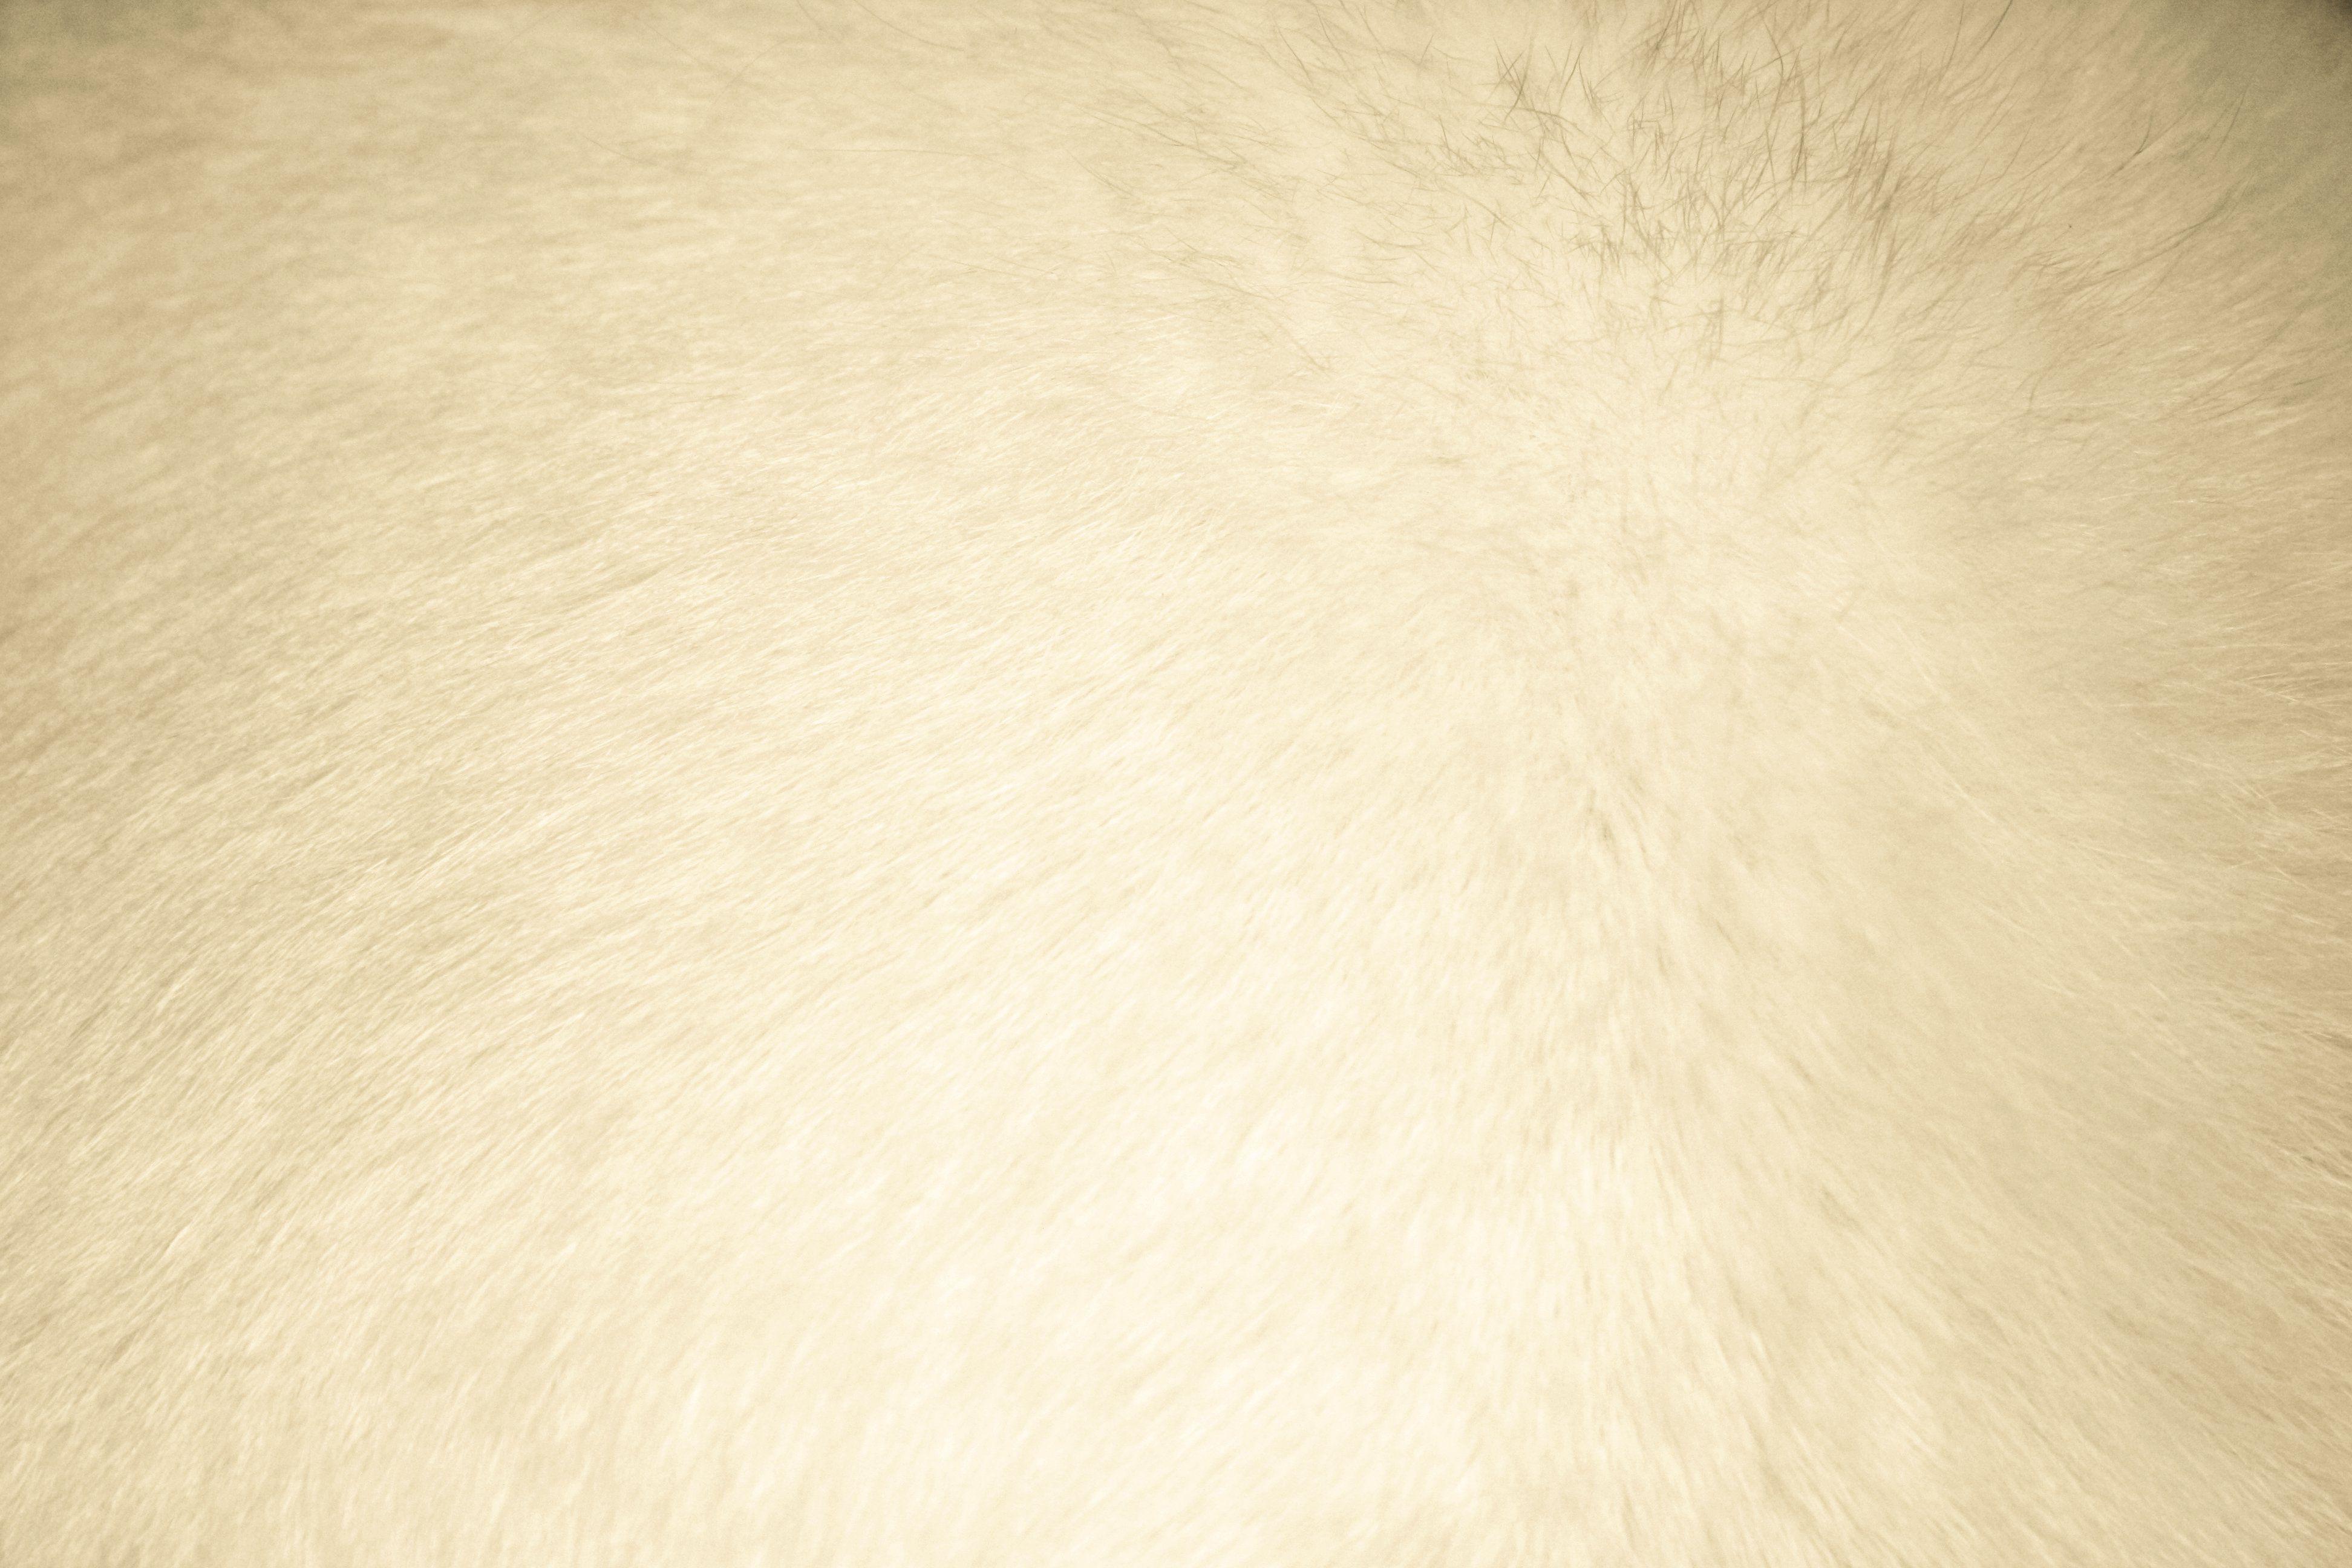 Beige Fur Texture Picture. Free Photograph. Photo Public Domain